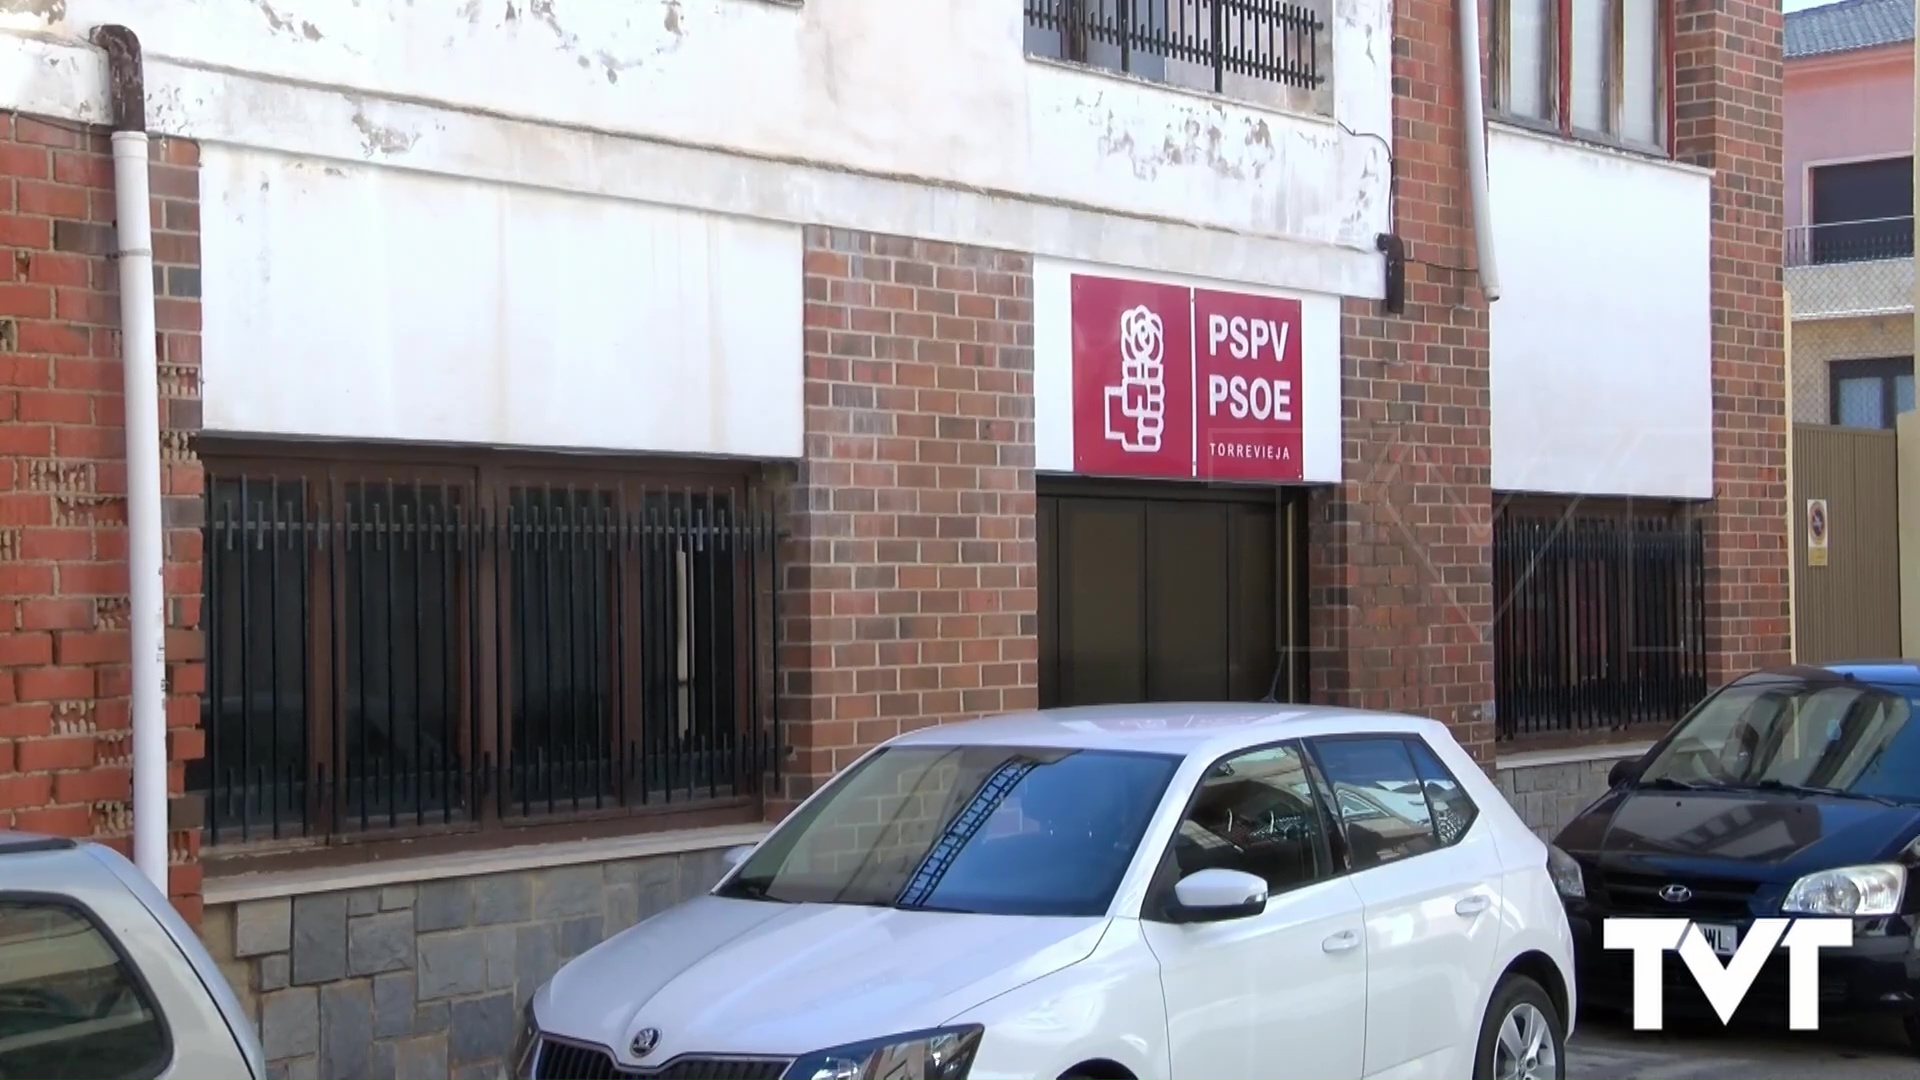 Imagen de El PSPV PSOE debe decidir si abre primaras en Torrevieja antes o después del 23J